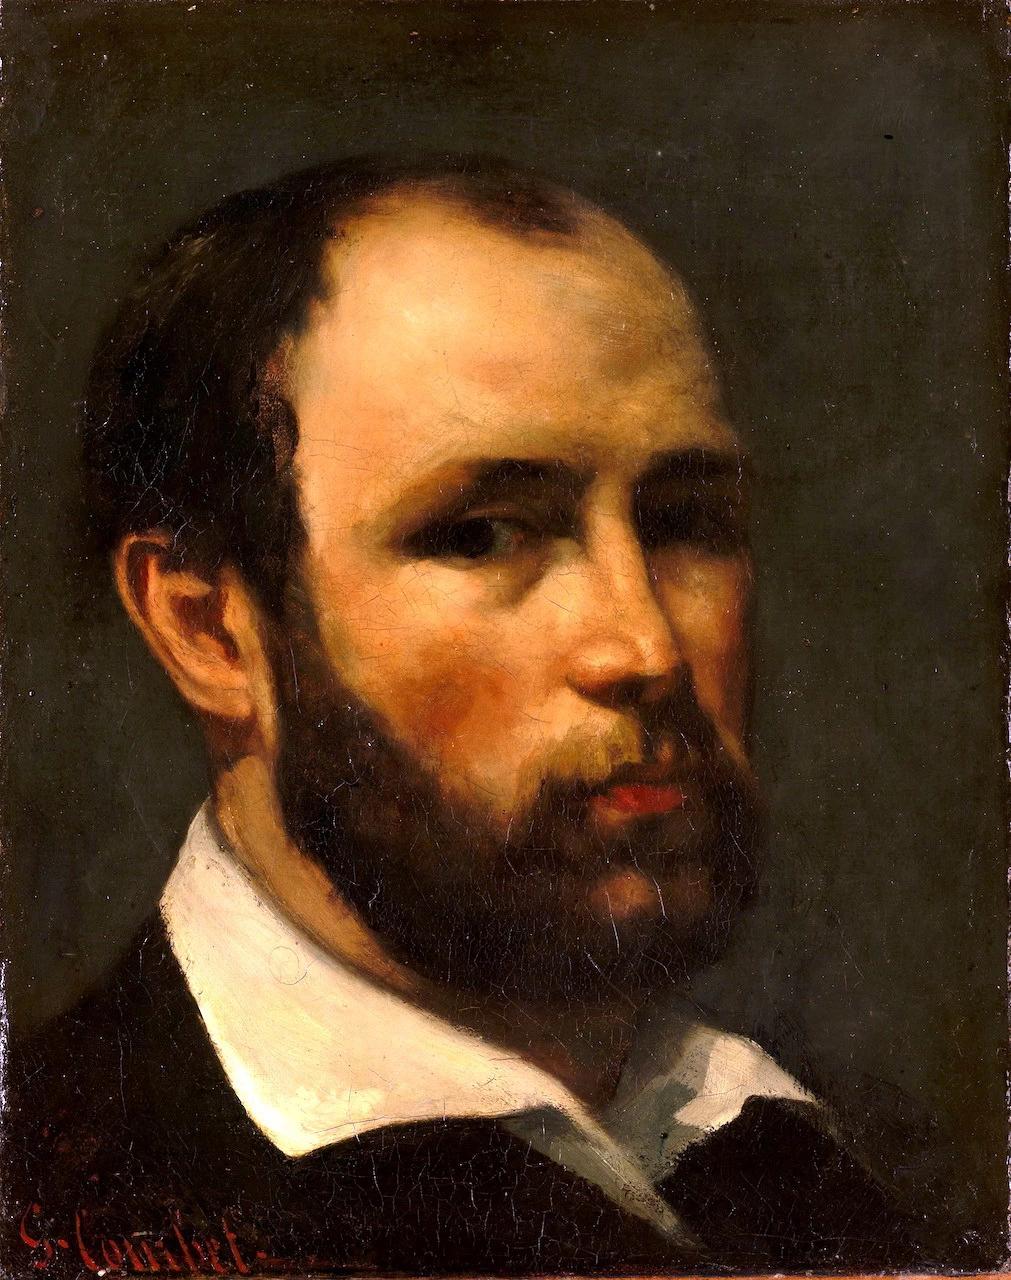   260-Ritratto di un uomo-Metropolitan Museum of Art-New York